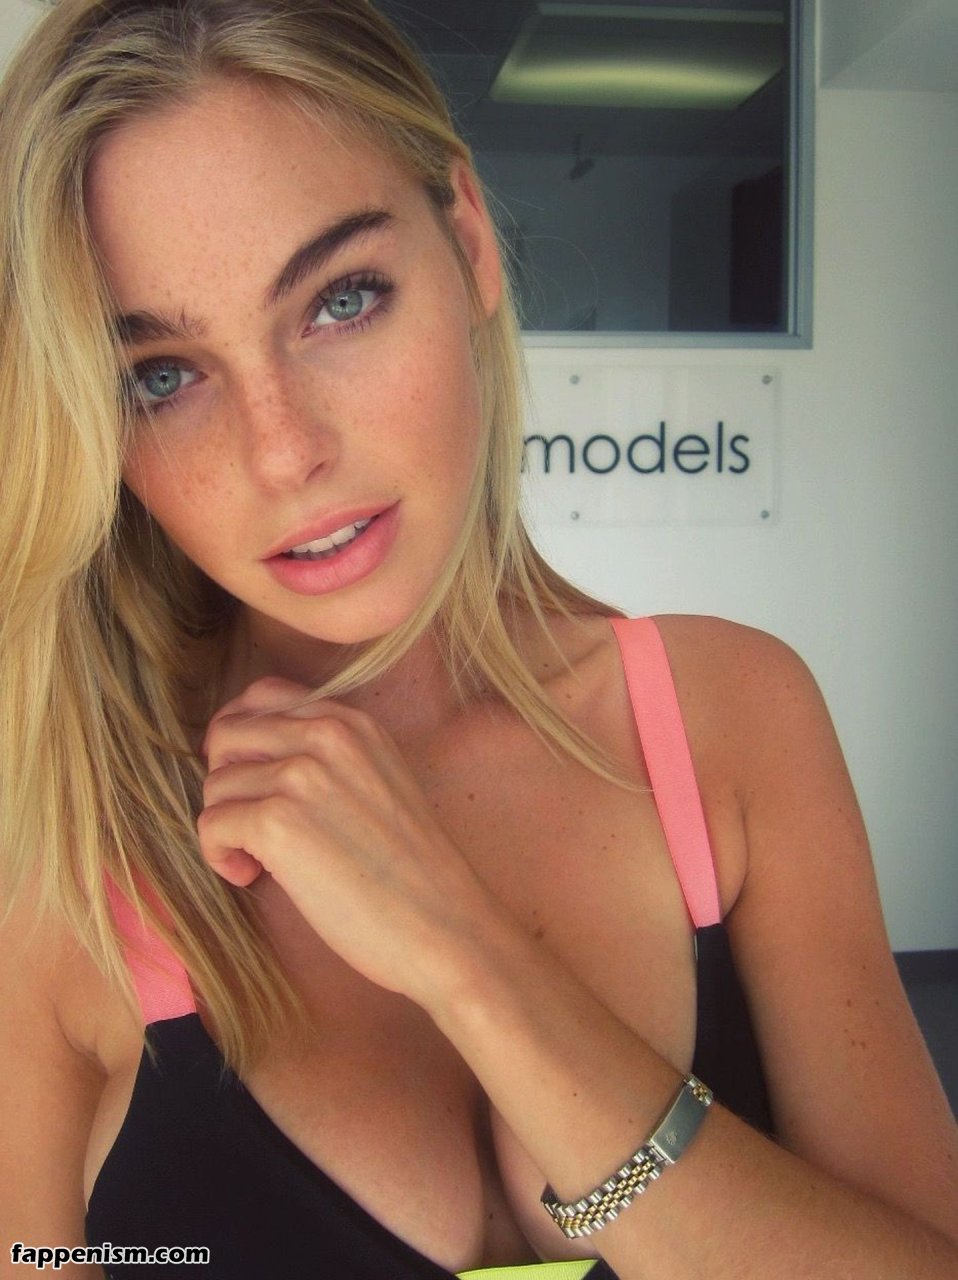 Models nudes leaked Tom Daley: